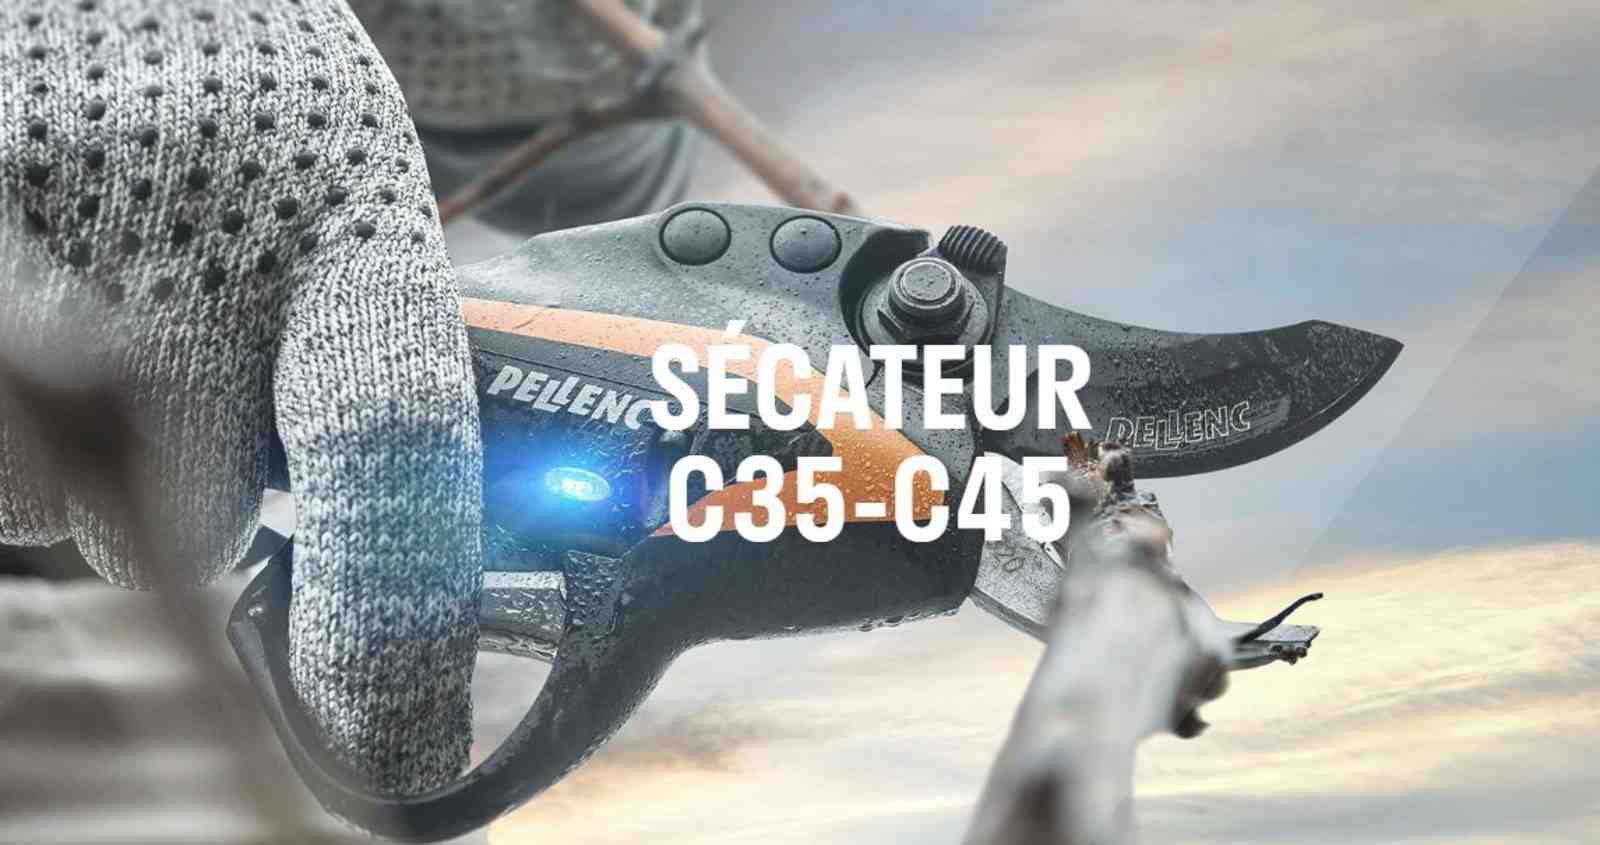 SECATEUR C45 250